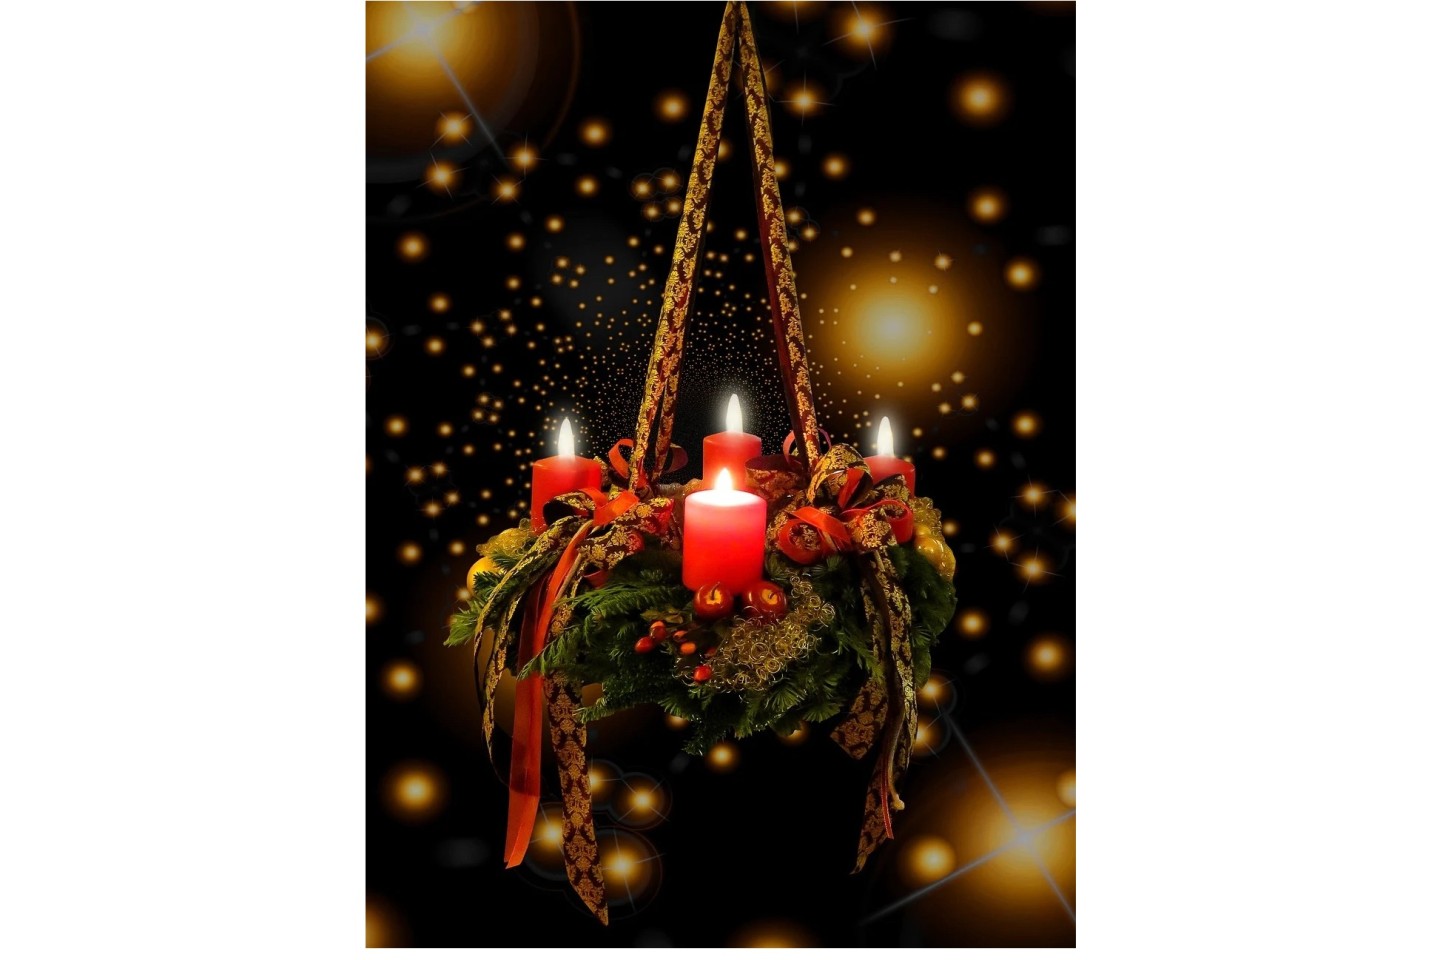 Wir wünschen euch allen einen schönen 4. Advent Zeit der Vorfreude und Vorbereitung, der Stille und der Erwartung Foto: Pixabay